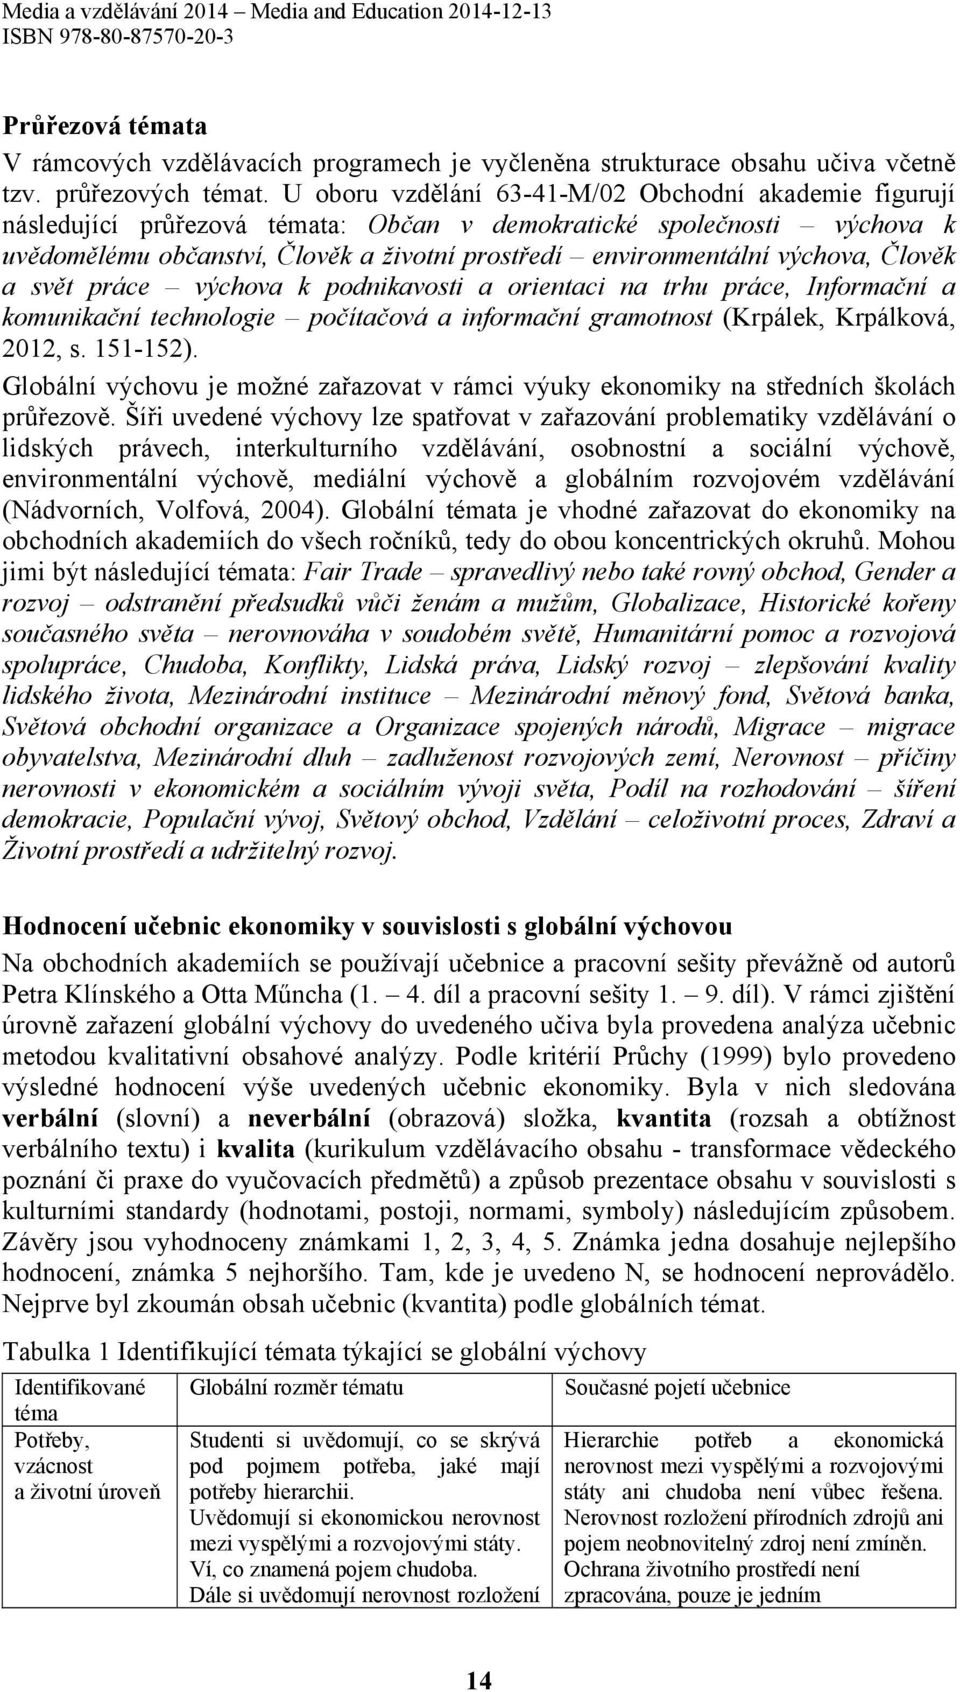 výchova, Člověk a svět práce výchova k podnikavosti a orientaci na trhu práce, Informační a komunikační technologie počítačová a informační gramotnost (Krpálek, Krpálková, 2012, s. 151-152).